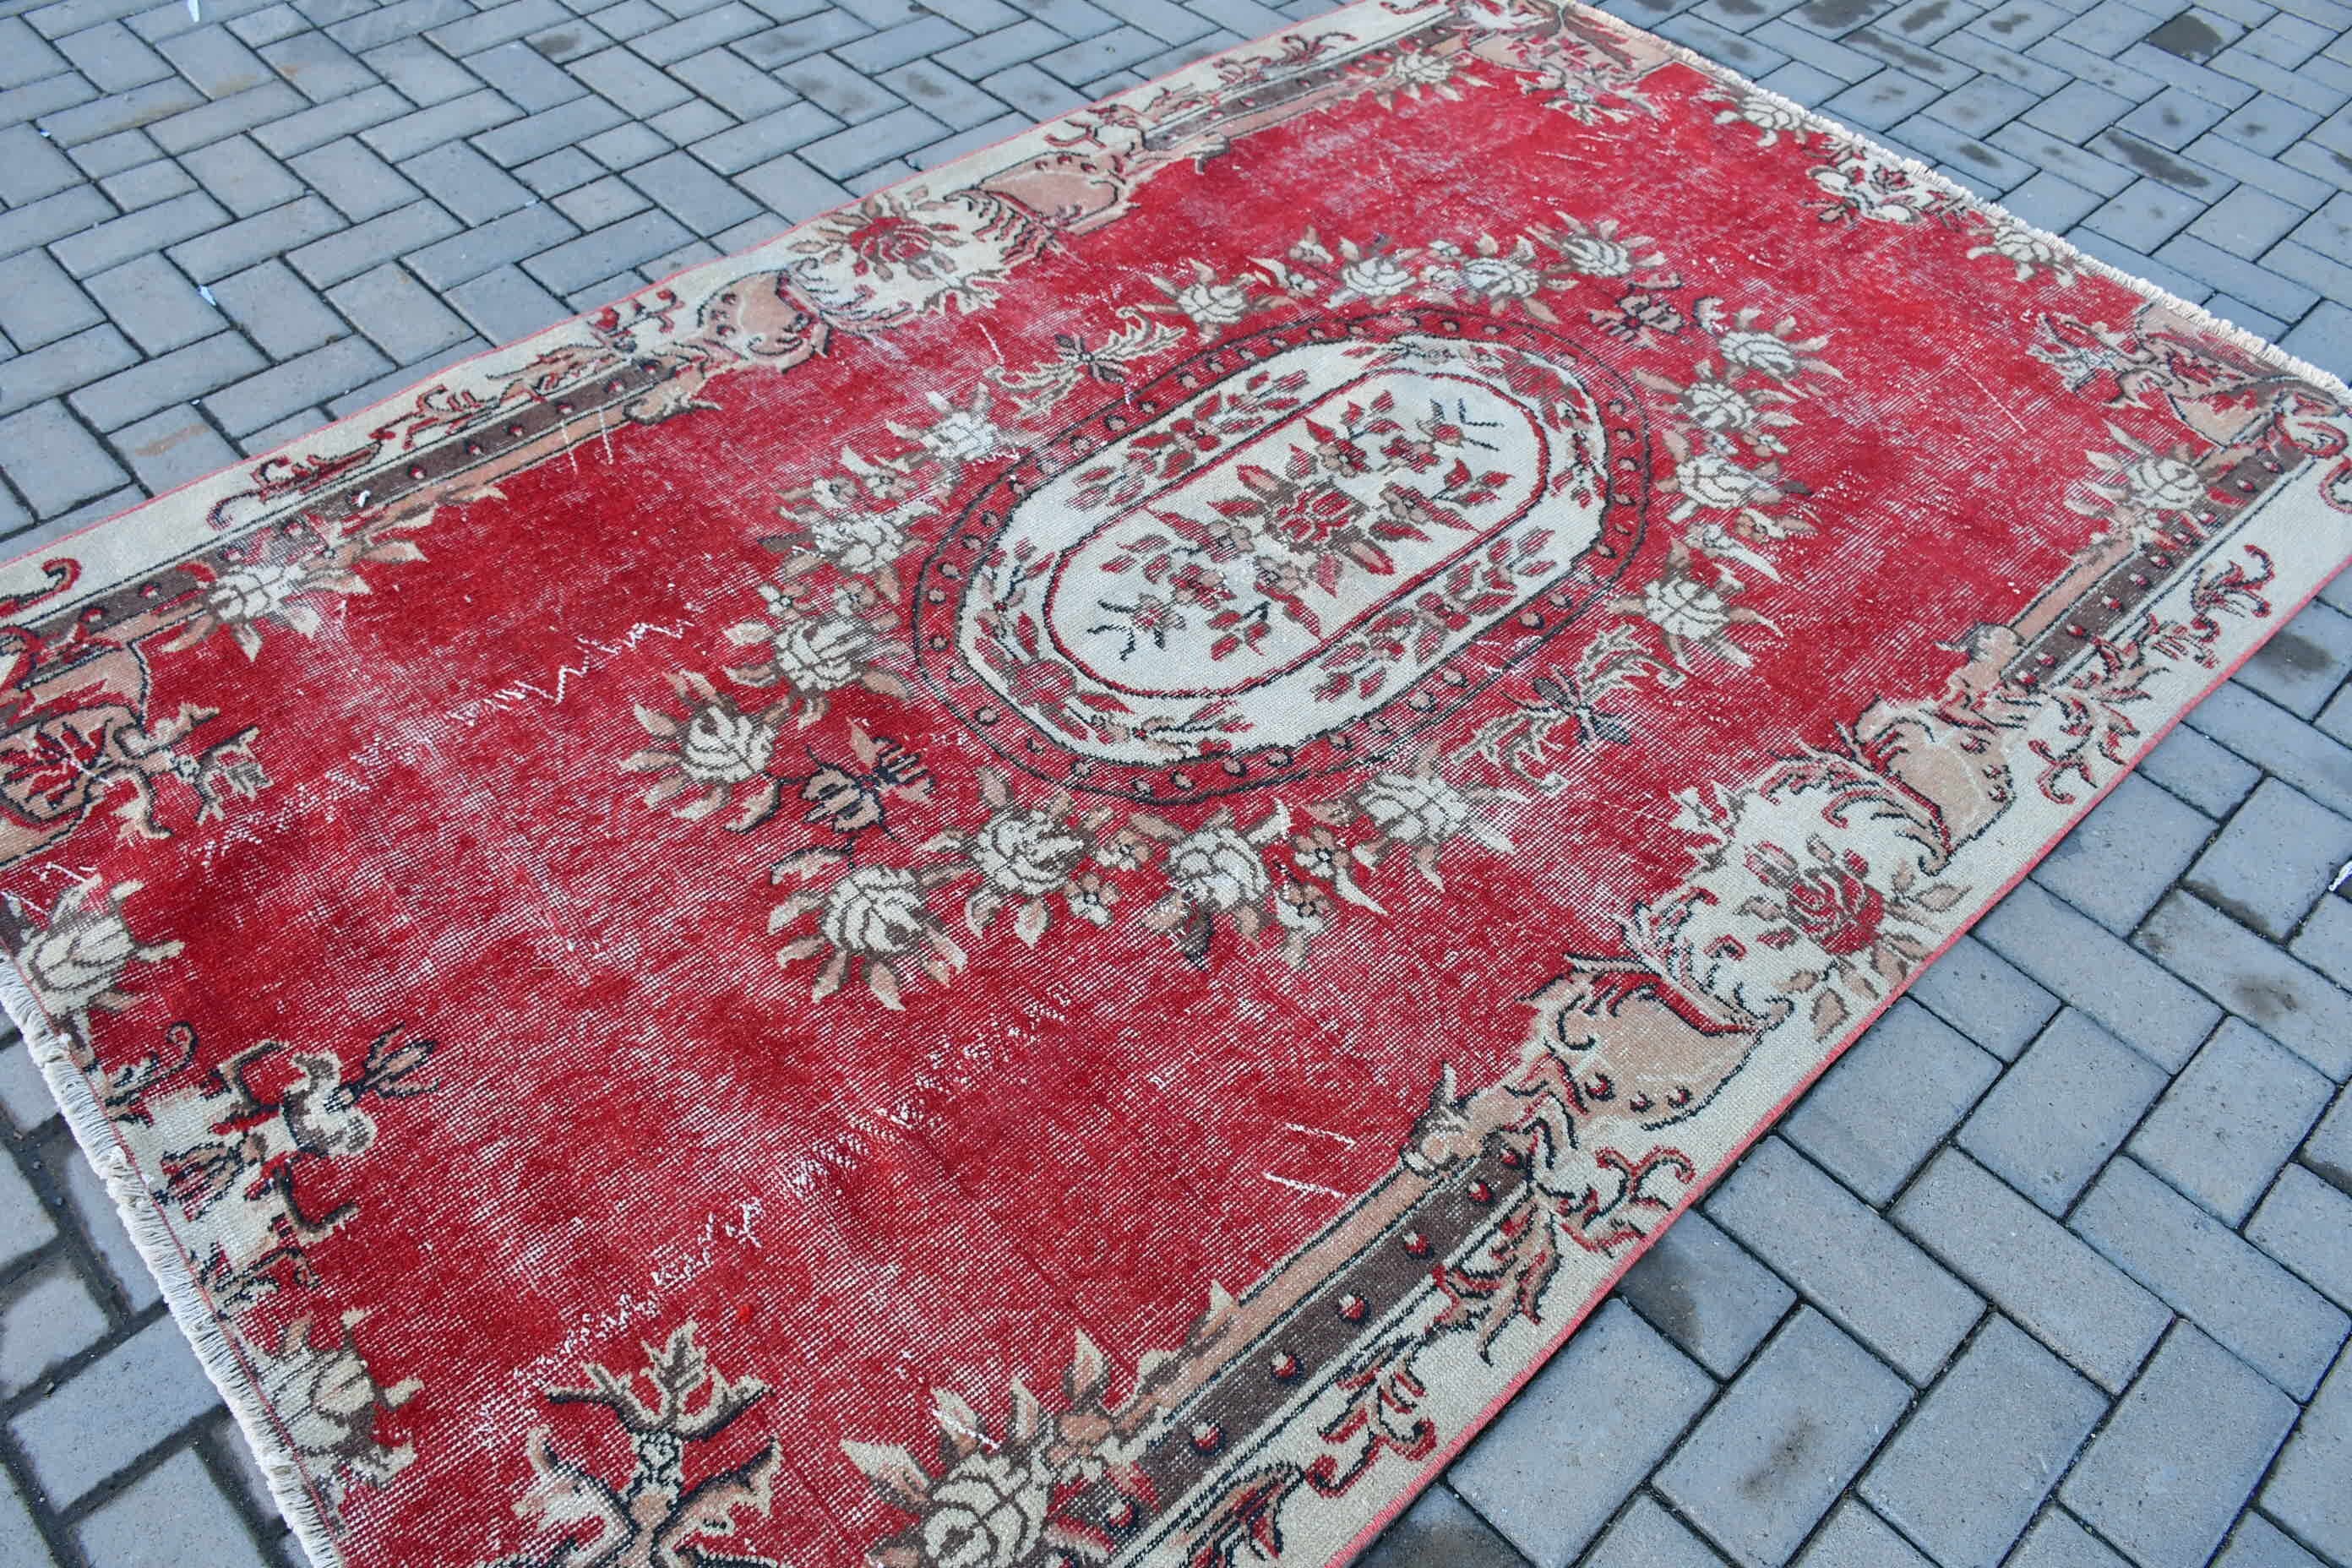 Red Oriental Rug, Bedroom Rug, Turkish Rug, Wool Rugs, Rugs for Bedroom, 5.2x7.9 ft Large Rug, Vintage Rugs, Salon Rug, Moroccan Rugs